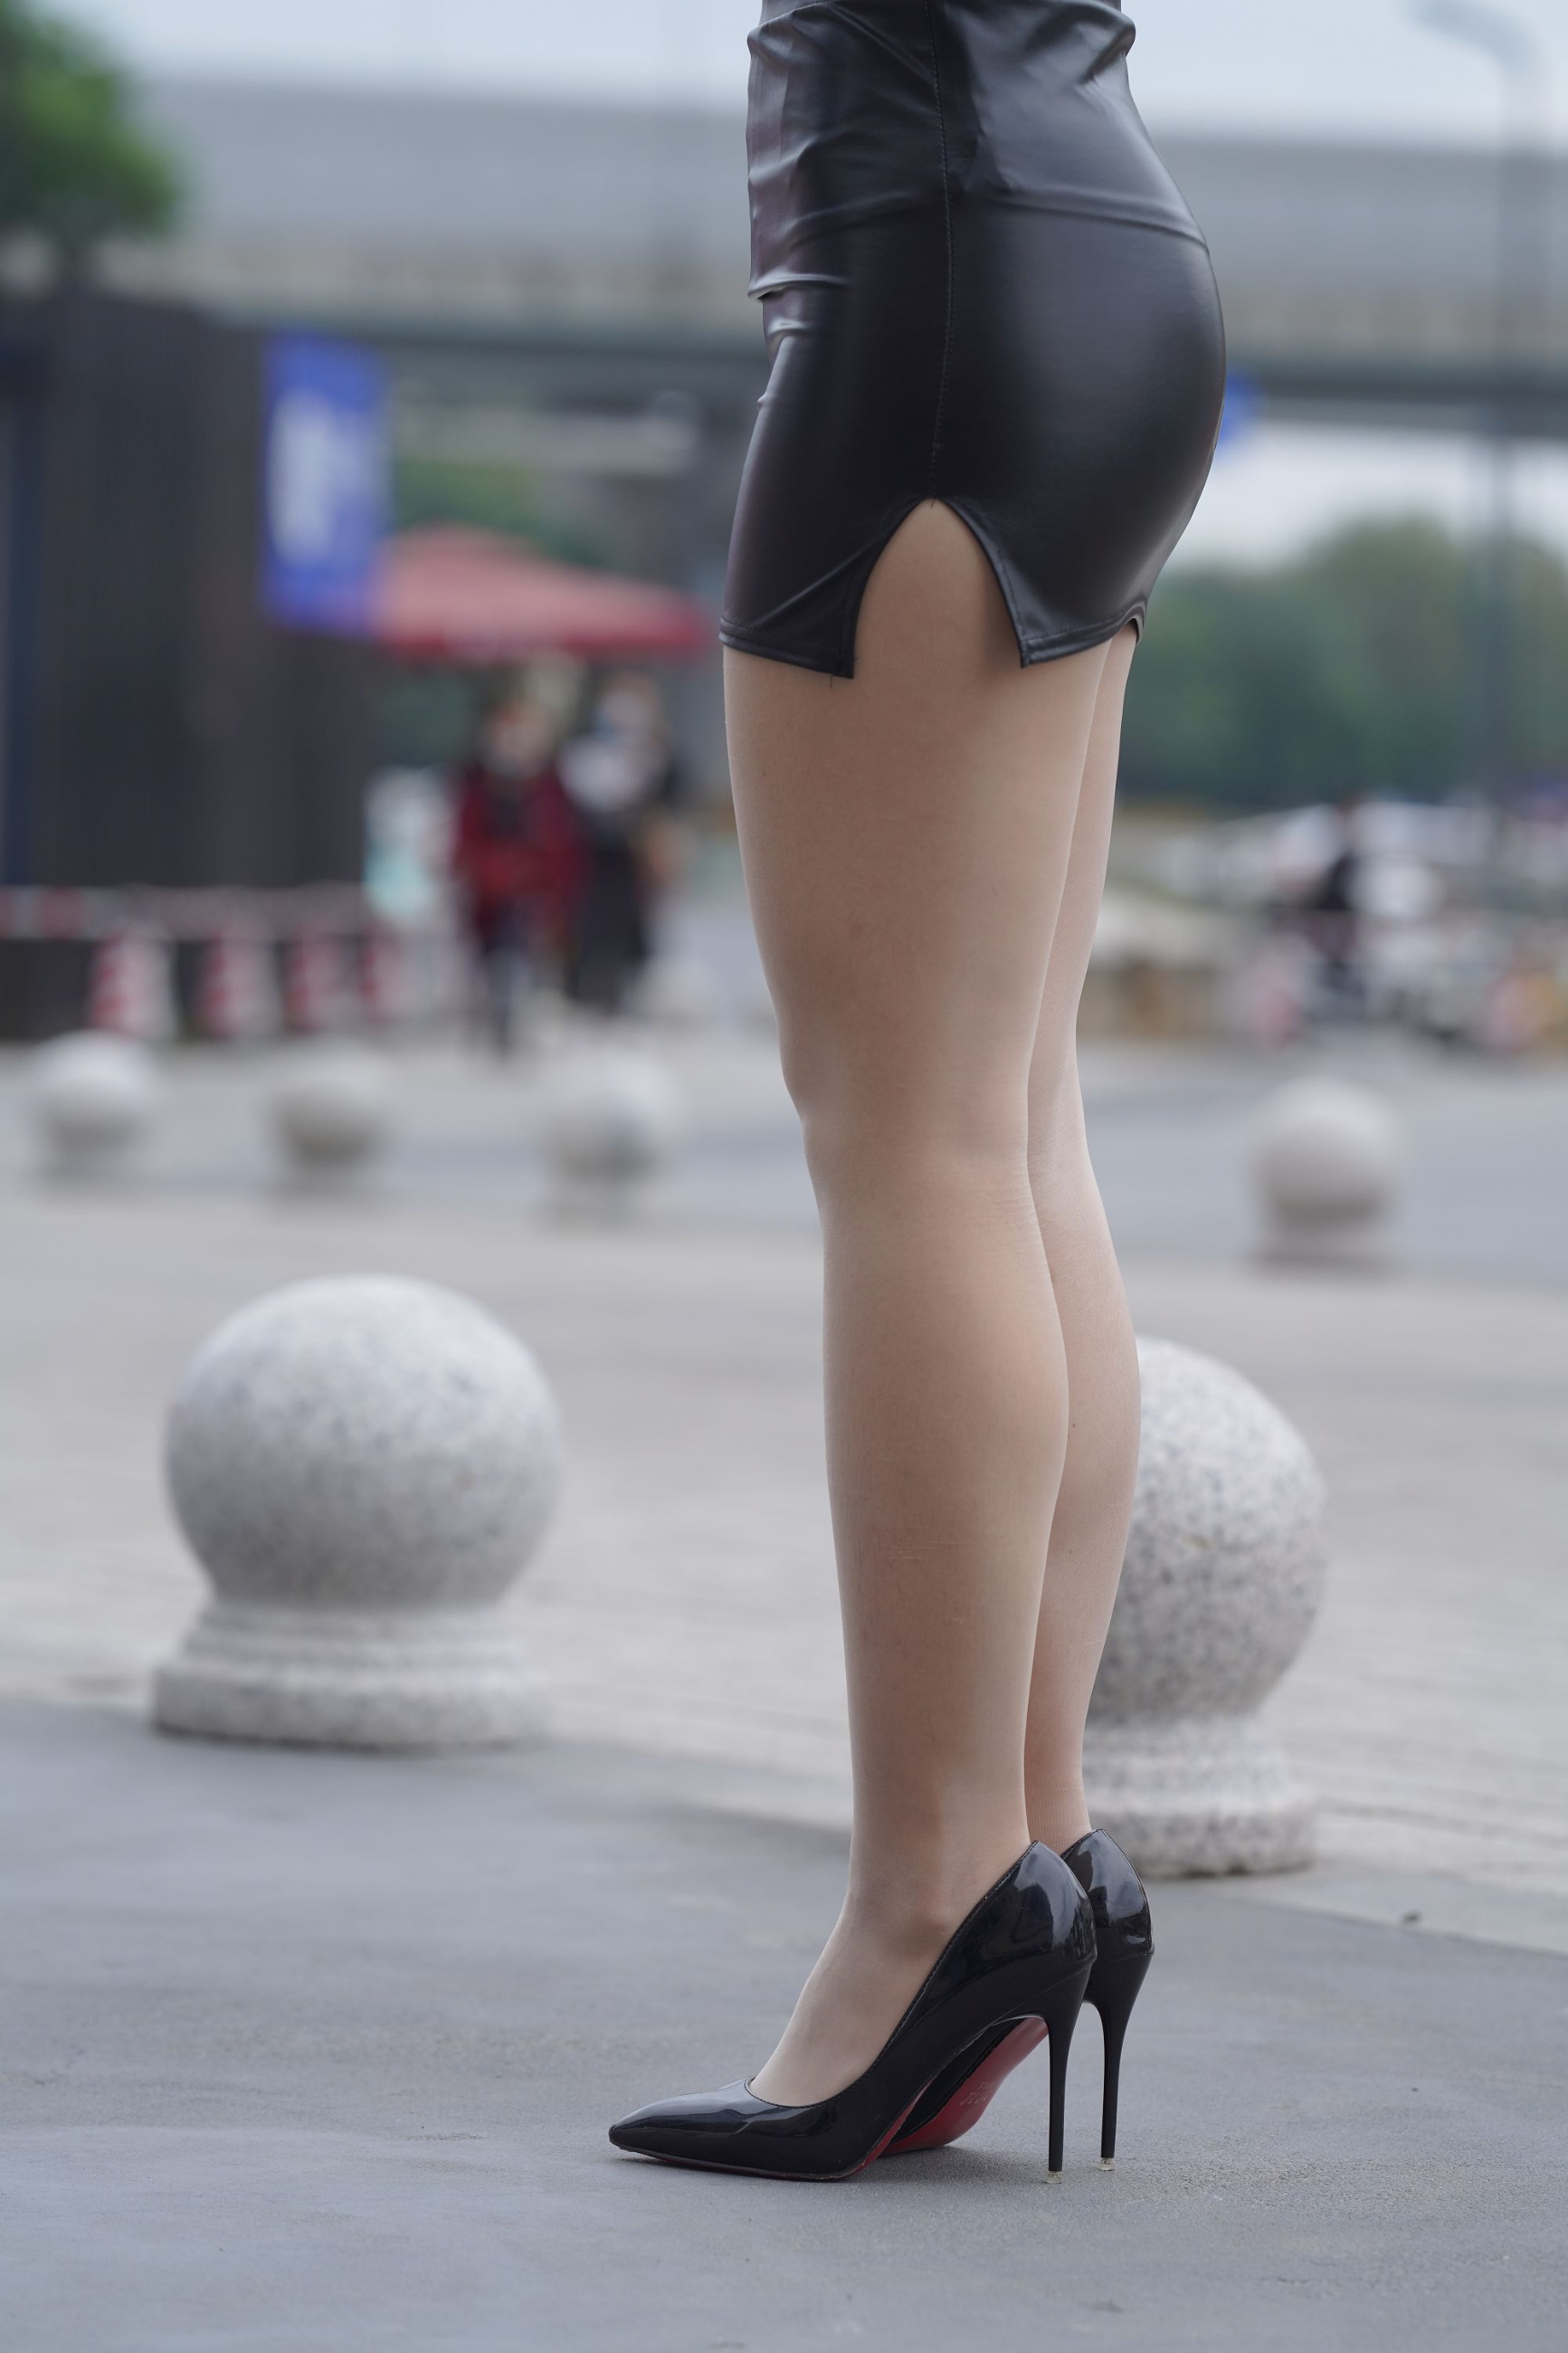 F197.【牛男街拍】紧俏的制服皮裙女孩.15.72G - 第1张